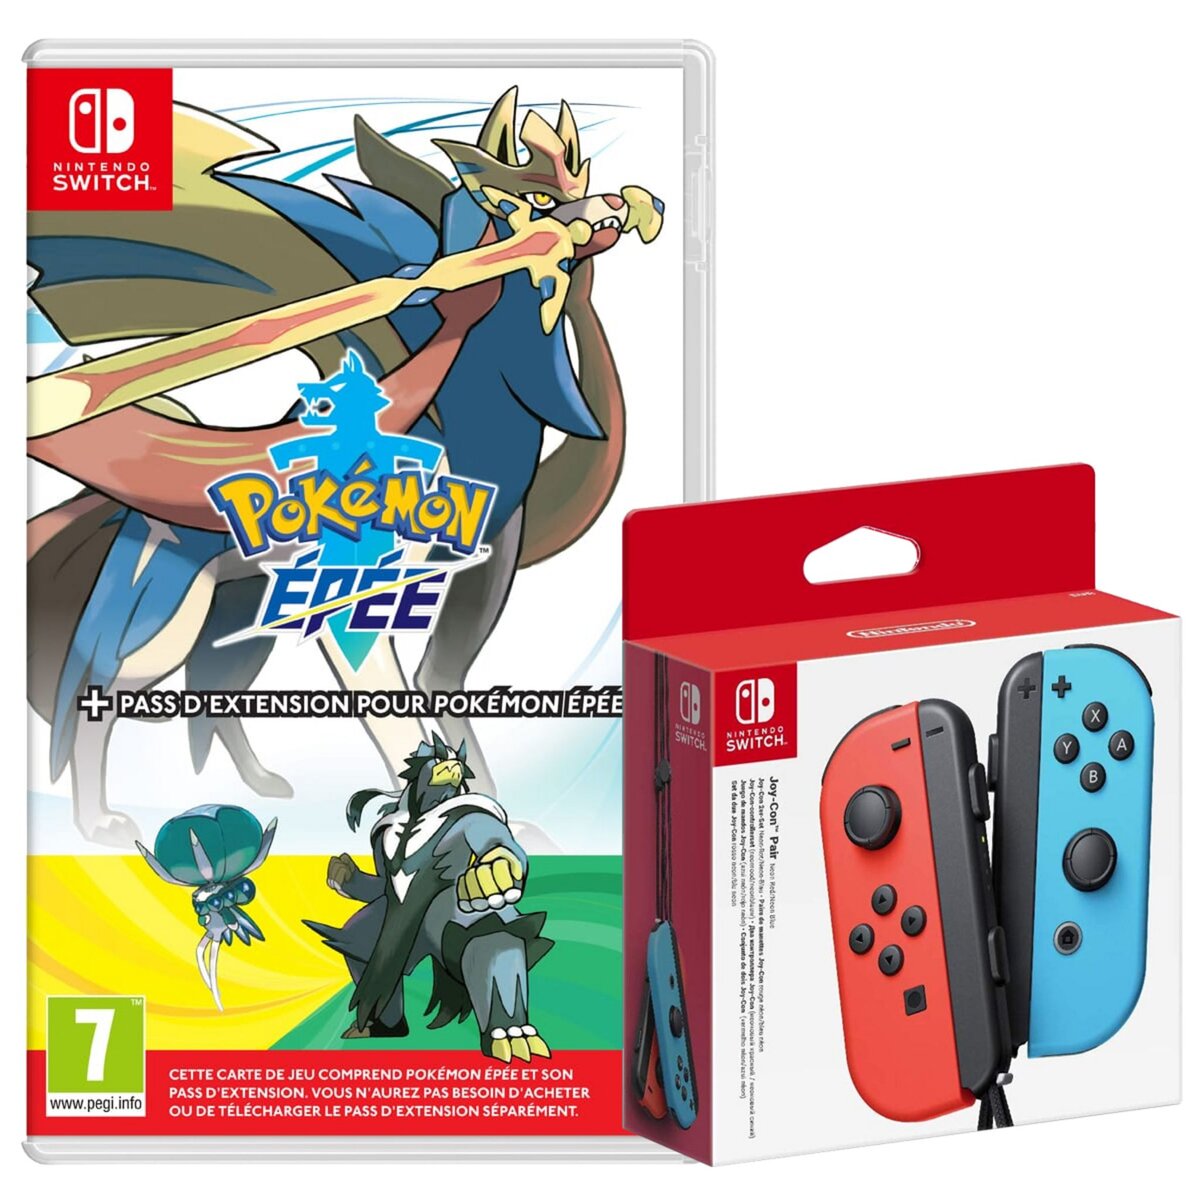 NINTENDO EXCLU WEB Manette Joy-Con Bleue et Rouge + Pokémon Épée avec son pass extension Nintendo Switch